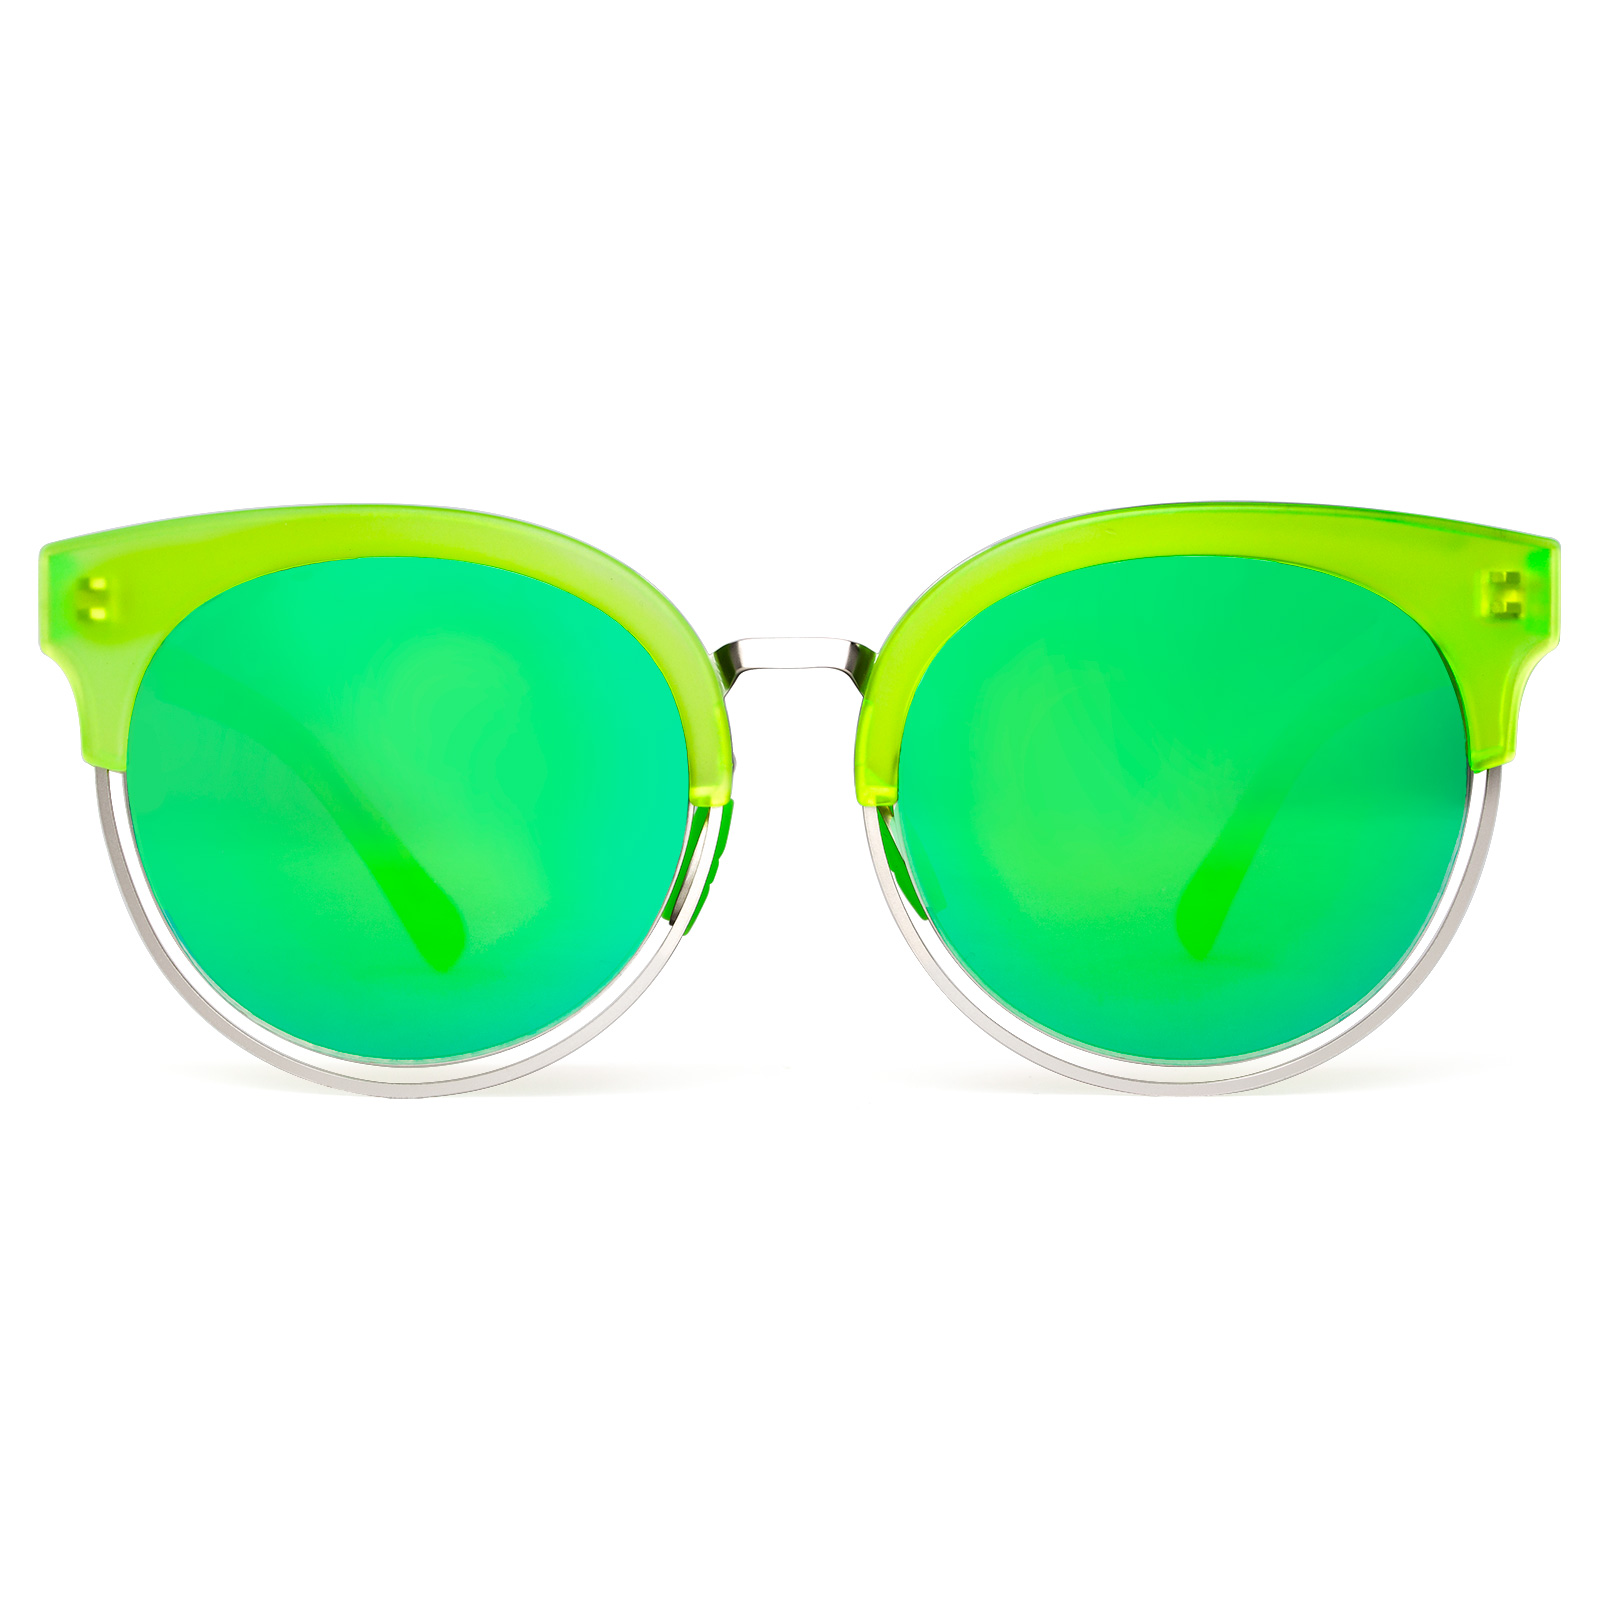 Round Vintage Sunglasses for Women, Classic Retro UV400 Designer Ladies Sunglasses